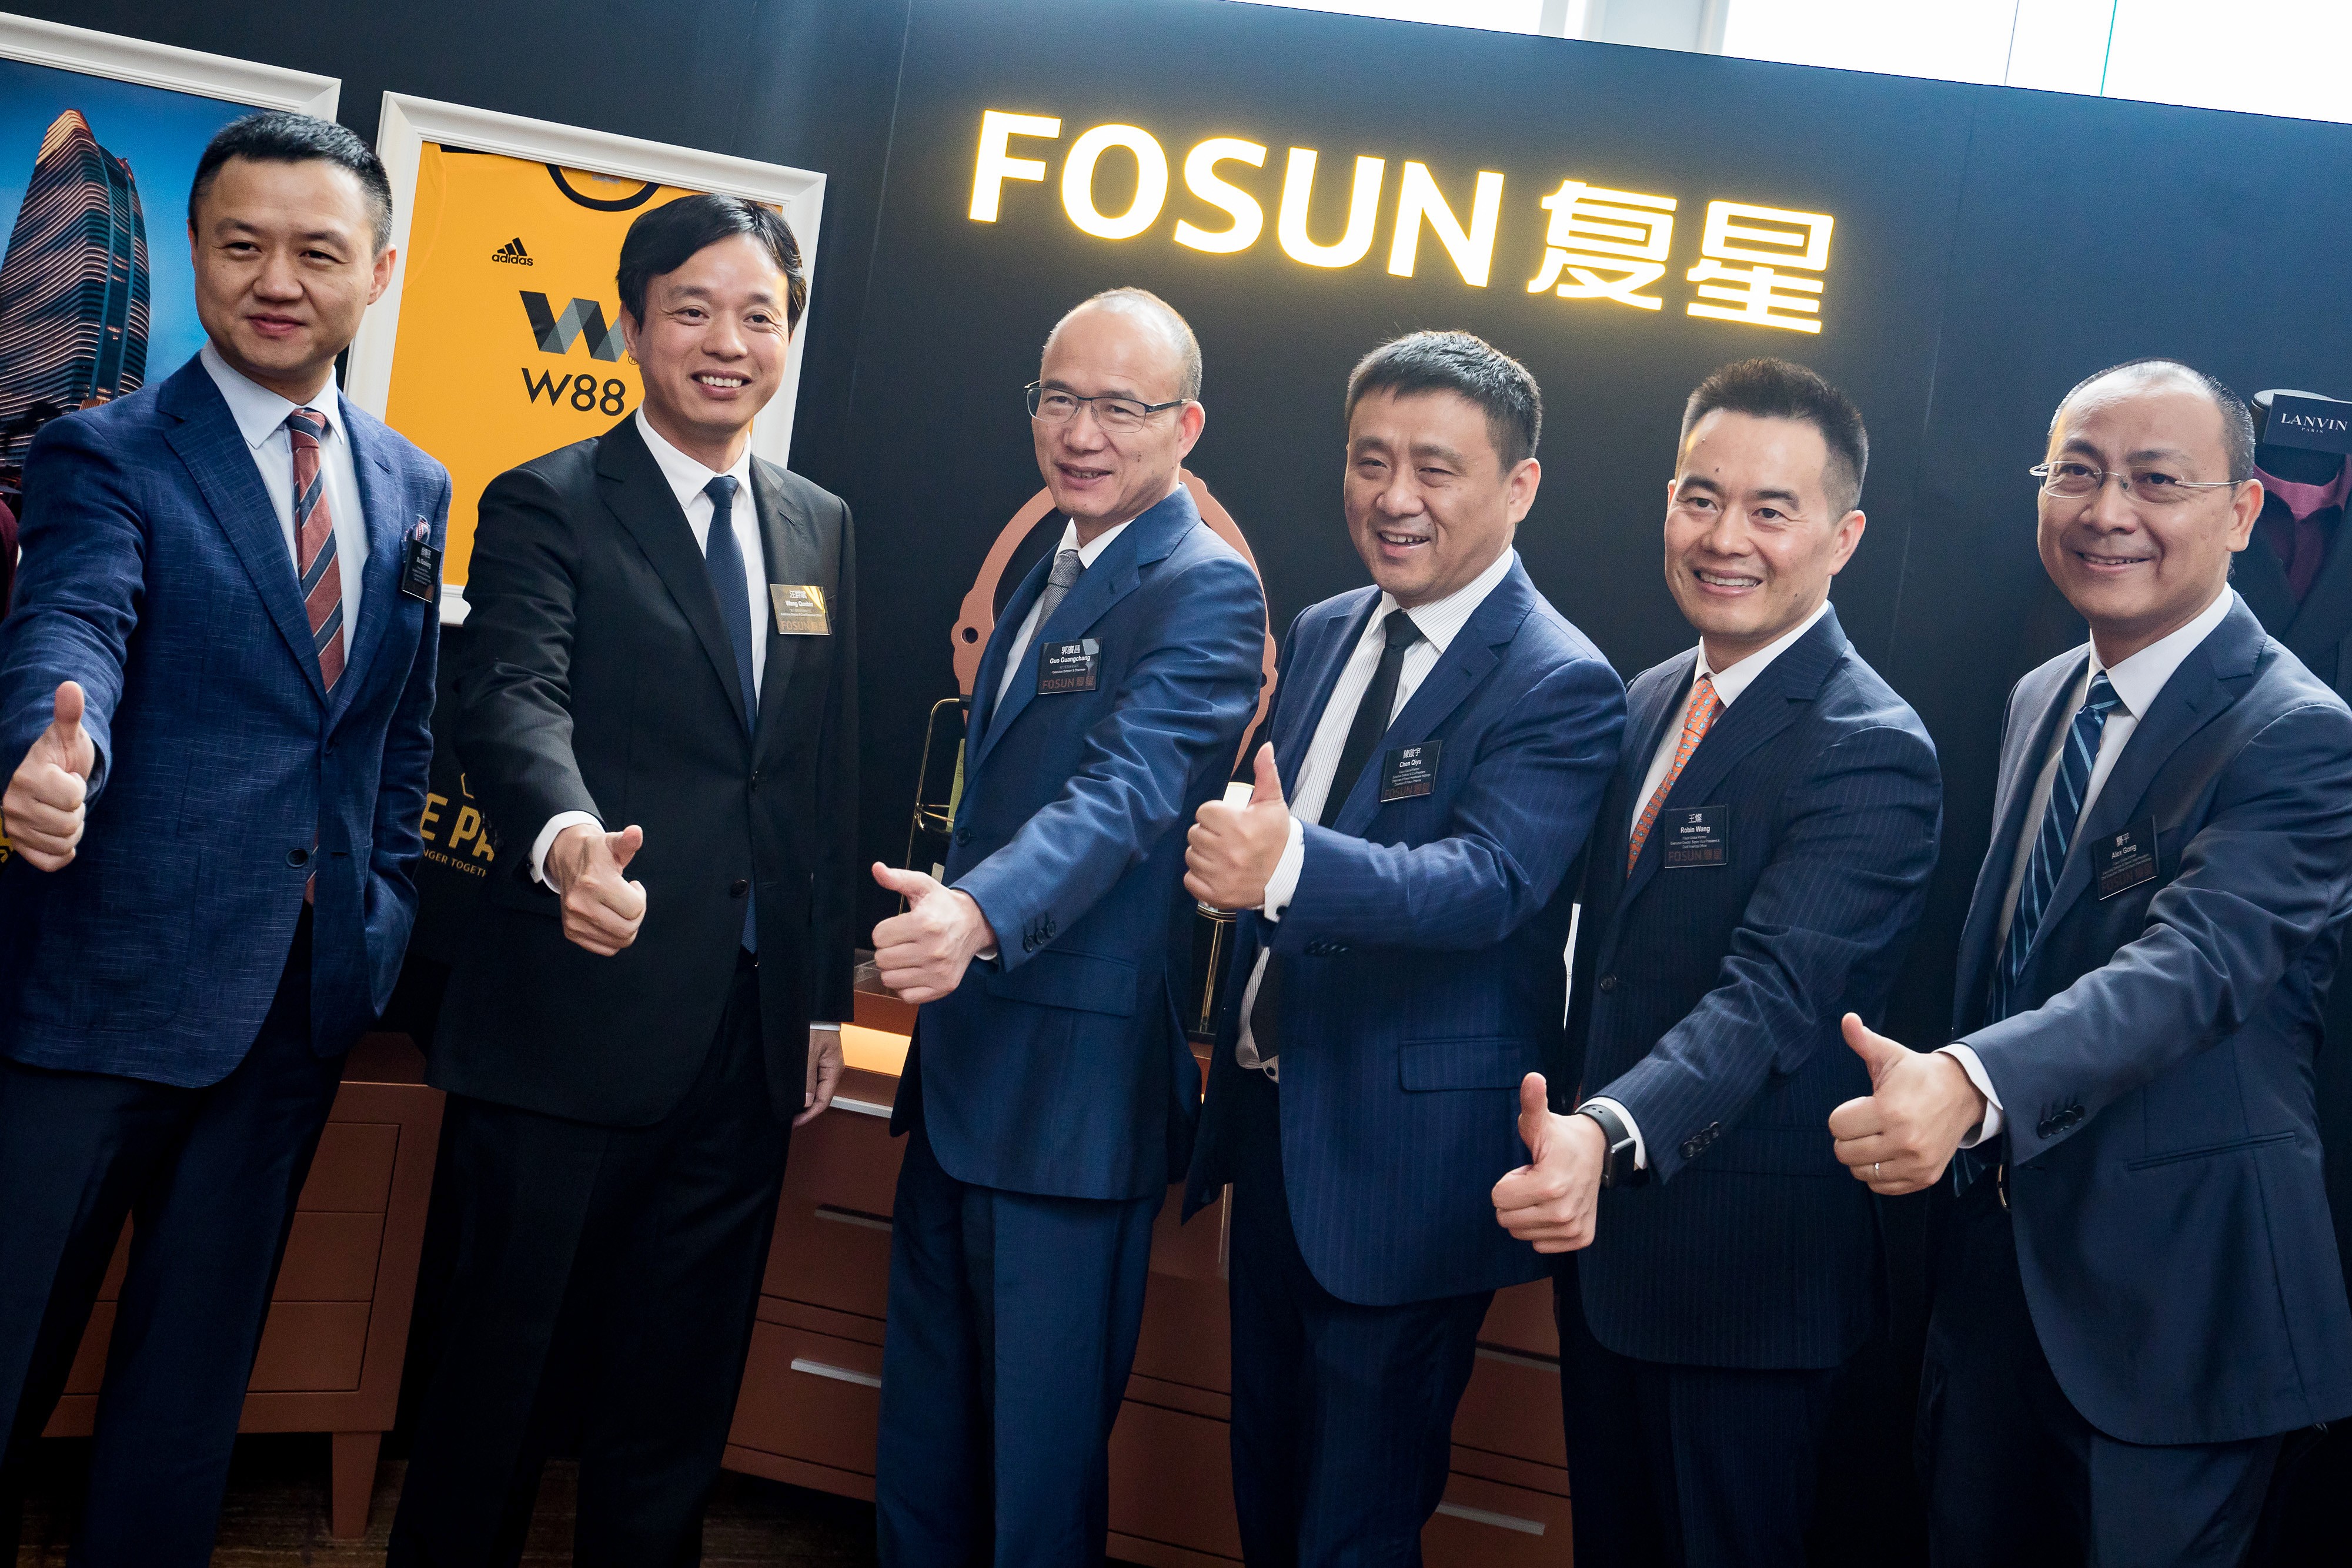 Fosun’s key management (from left) Xu Xiaoliang, Wang Qunbin, Guo Guangchang, Chen Qiyu, Robin Wang and Gong Ping pose for a photo after a briefing in Hong Kong in August 2018. Photo: Bloomberg